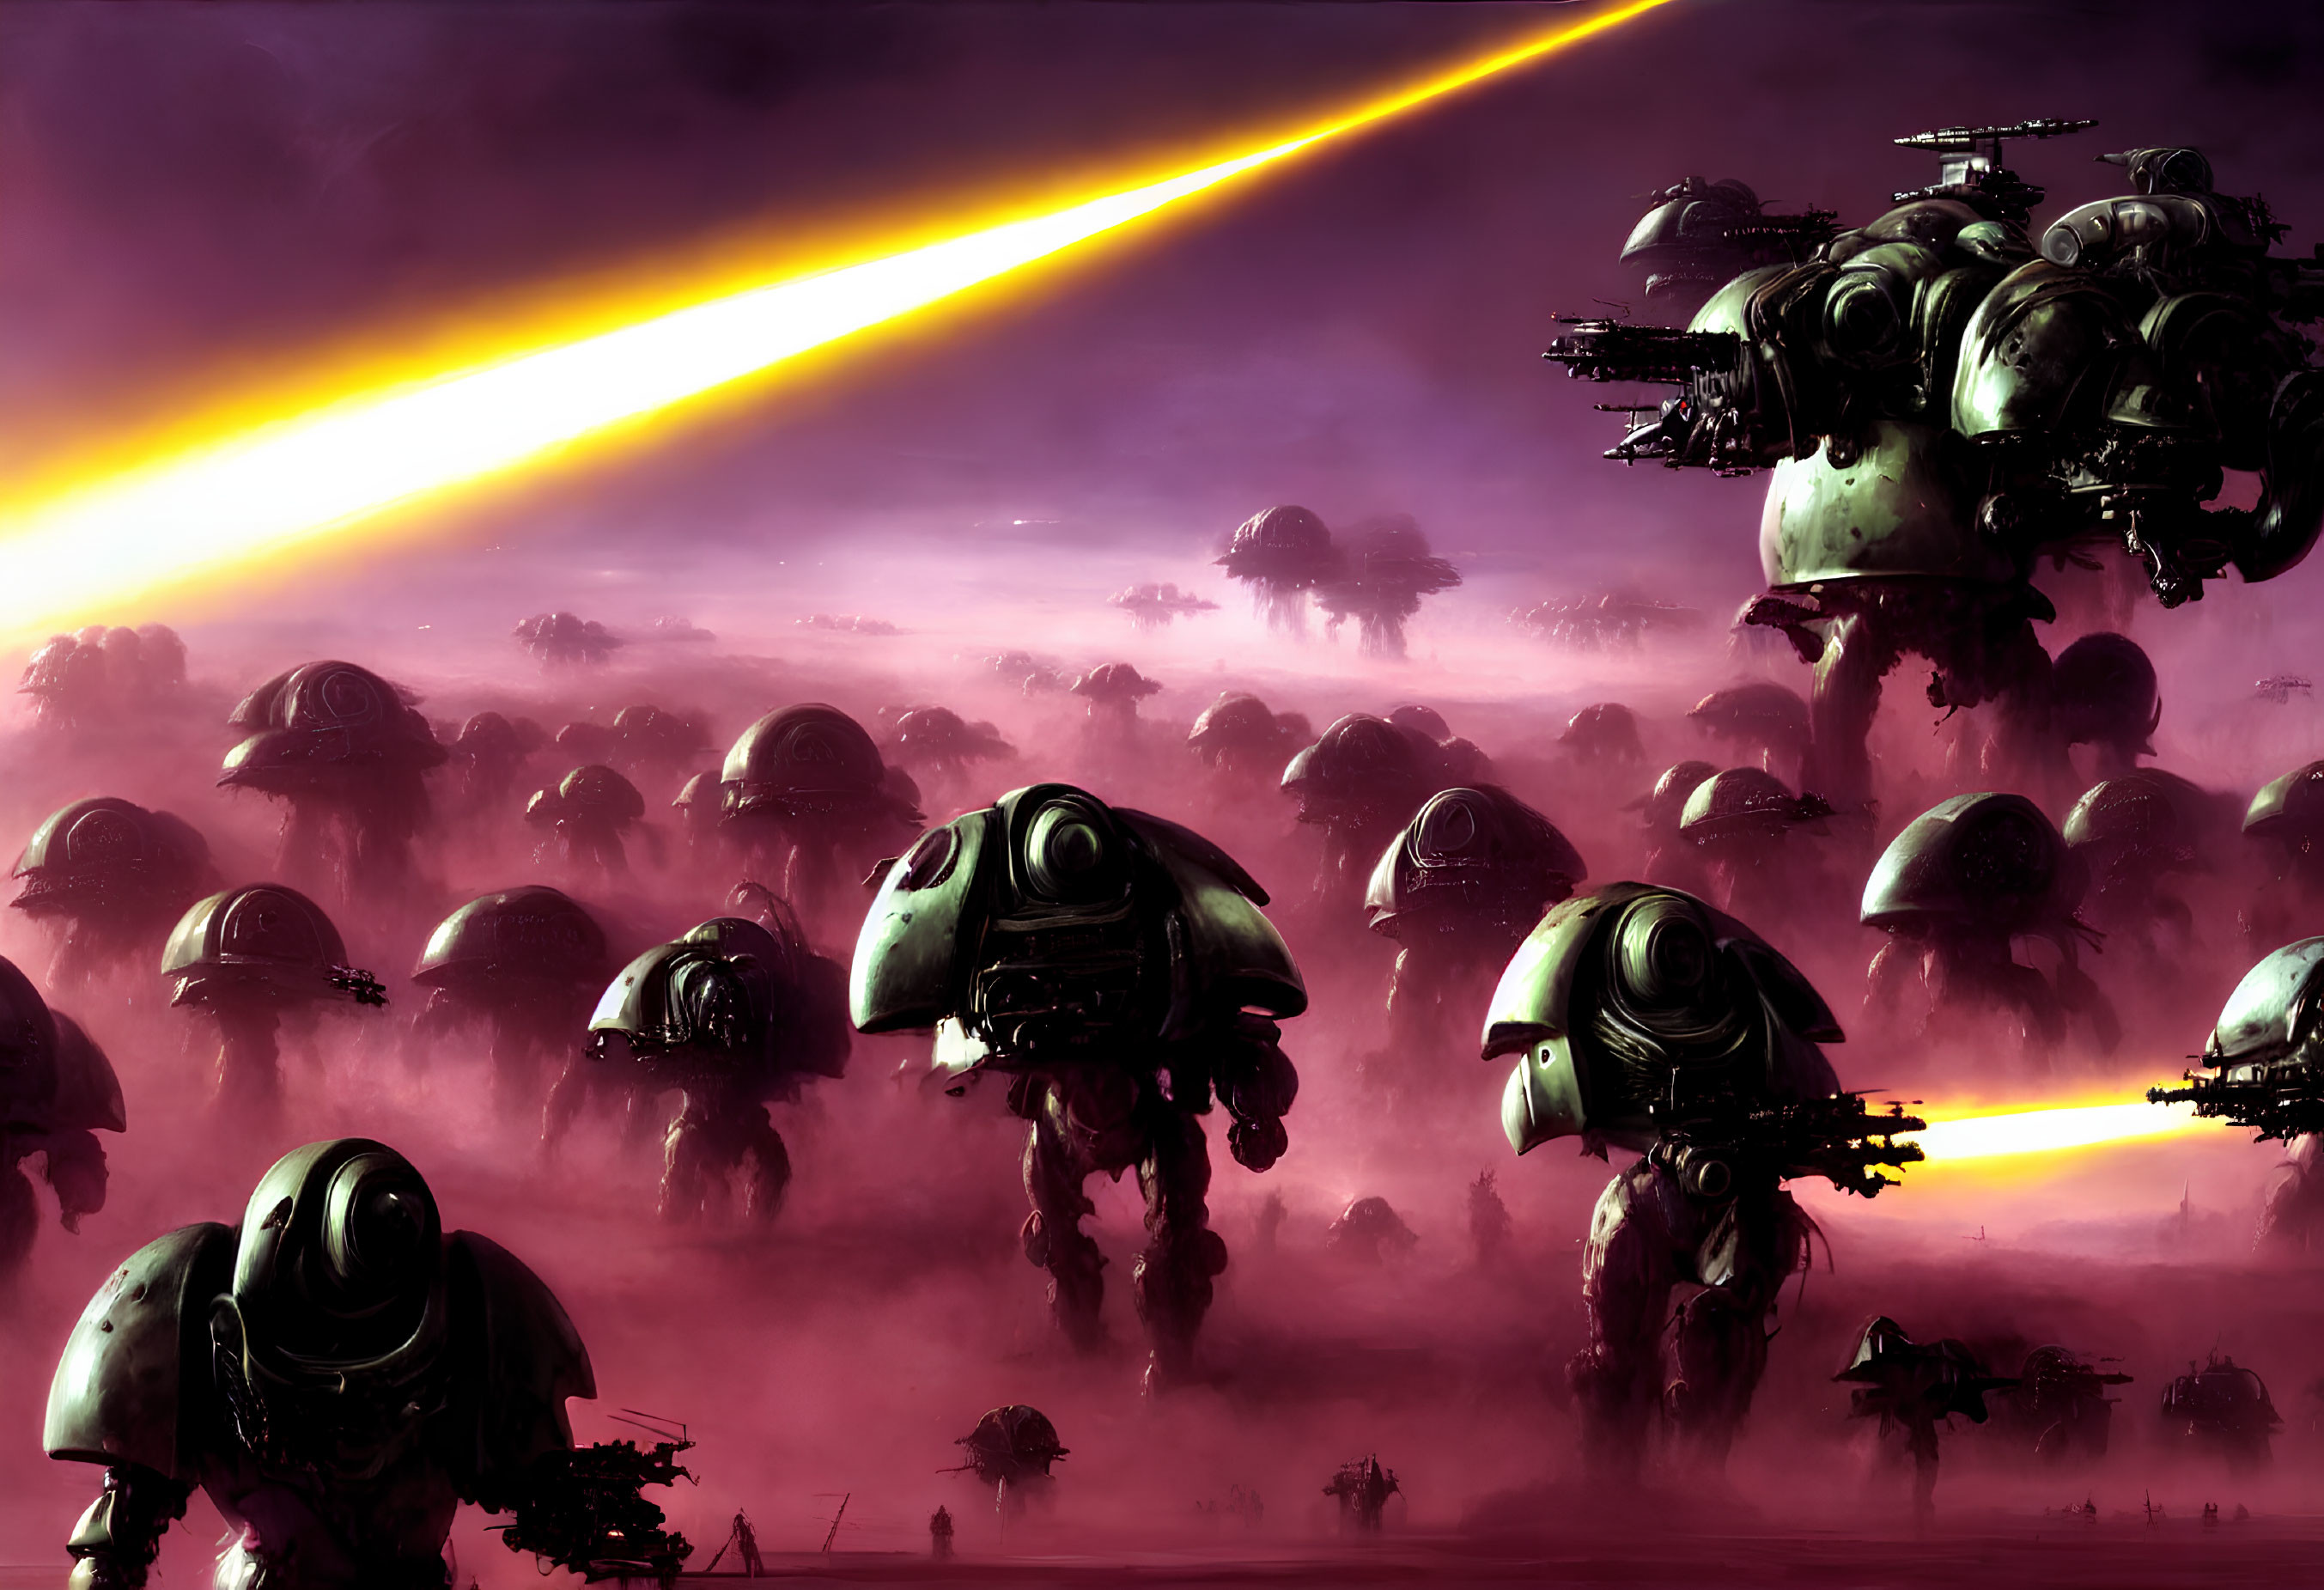 Sci-fi scene: robotic walkers and war machines under purple sky